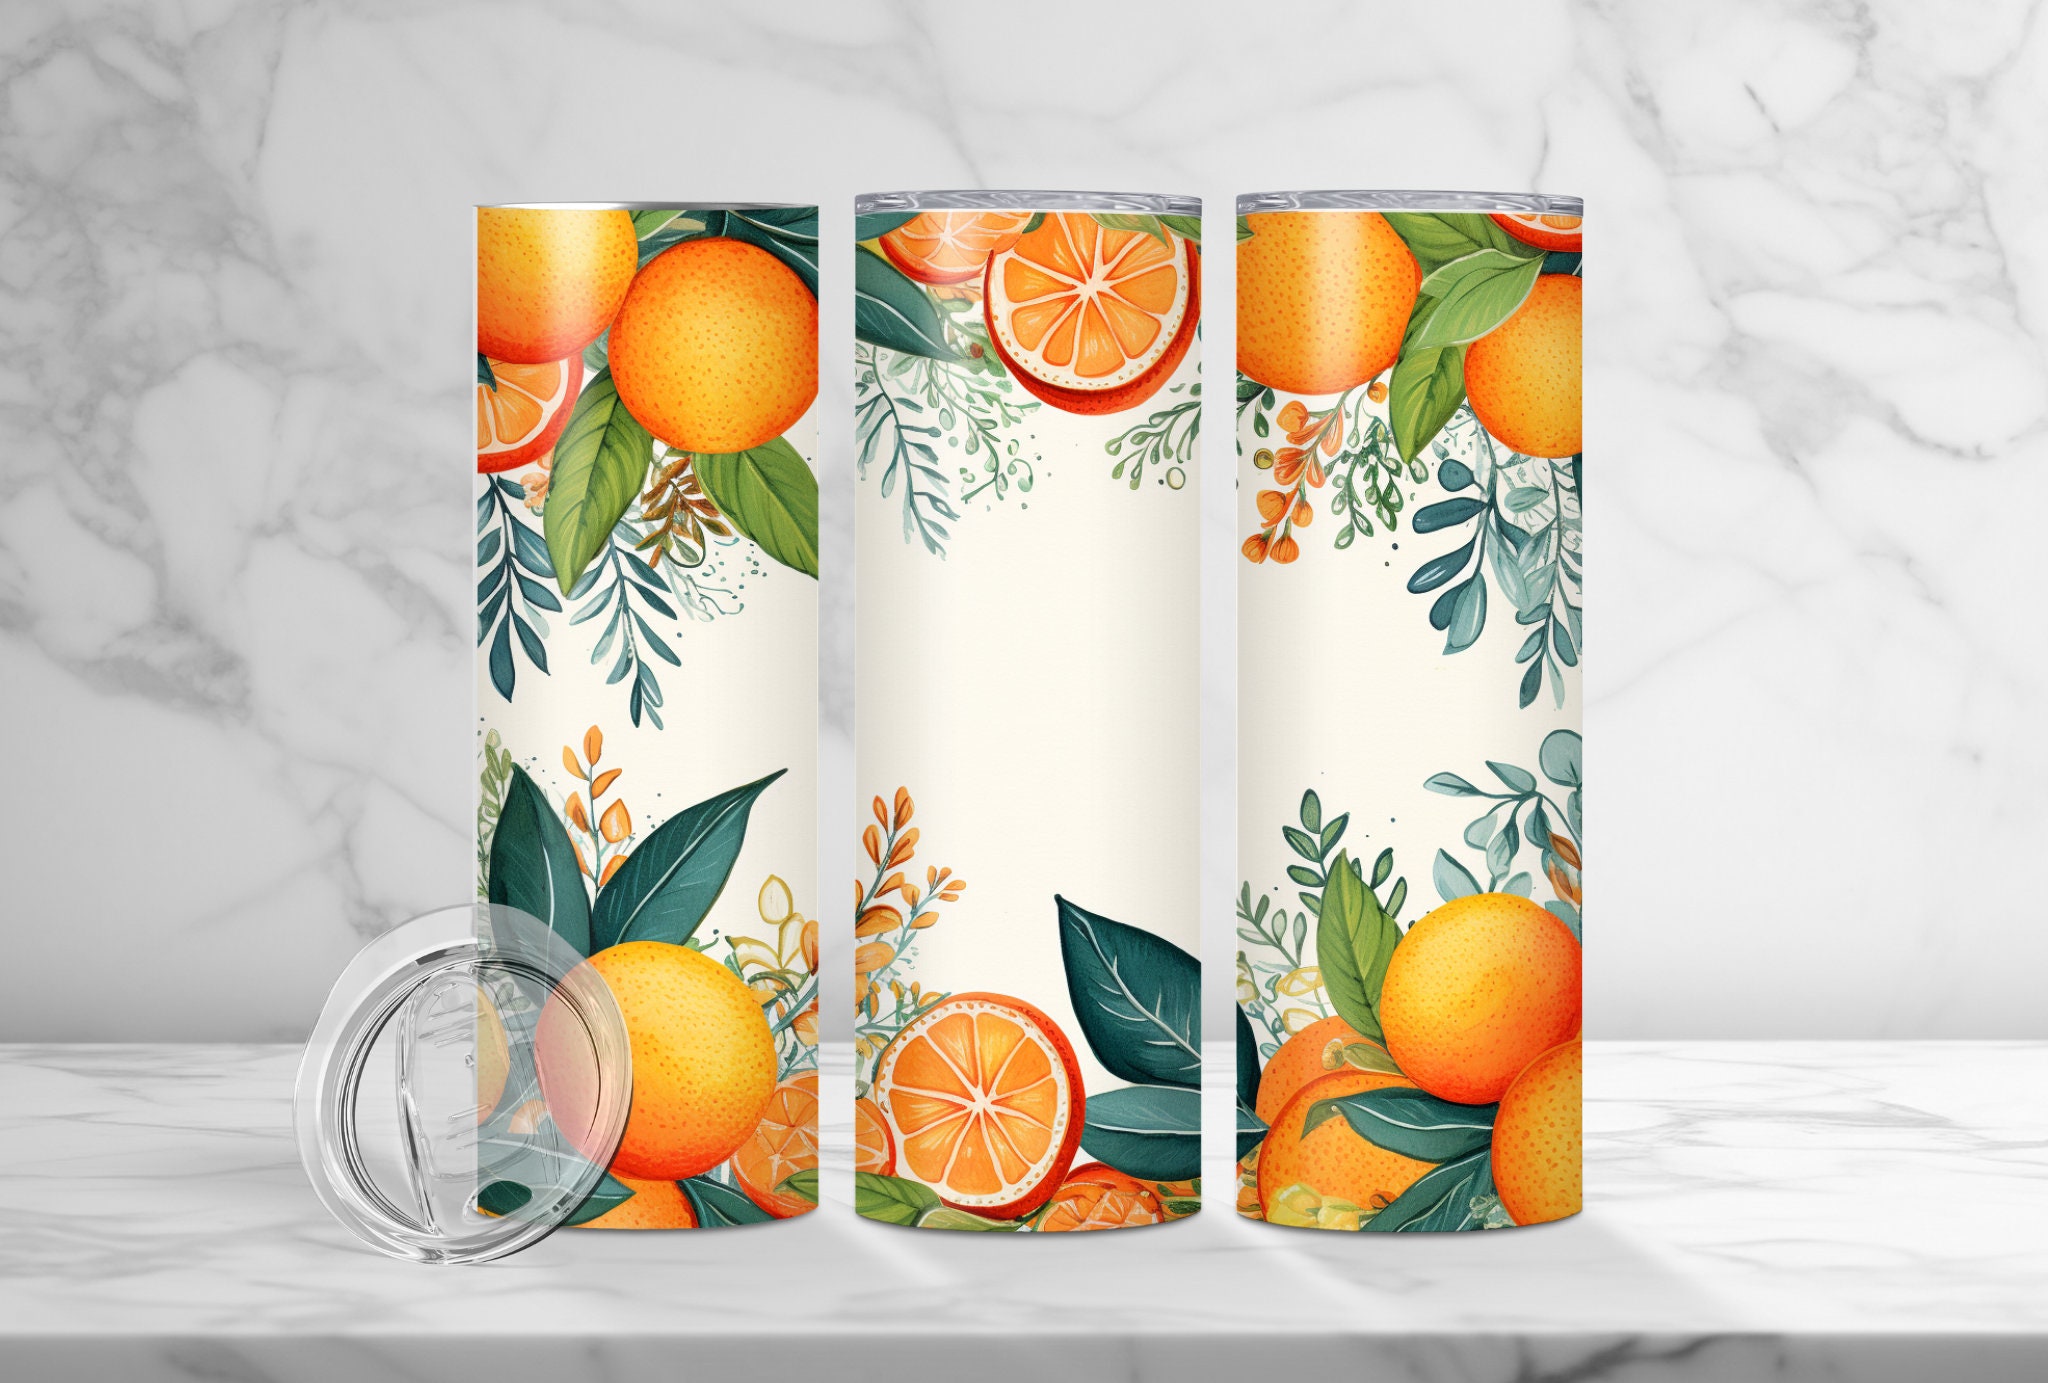 Epoxy Inlay Sunshine Art — the Awesome Orange